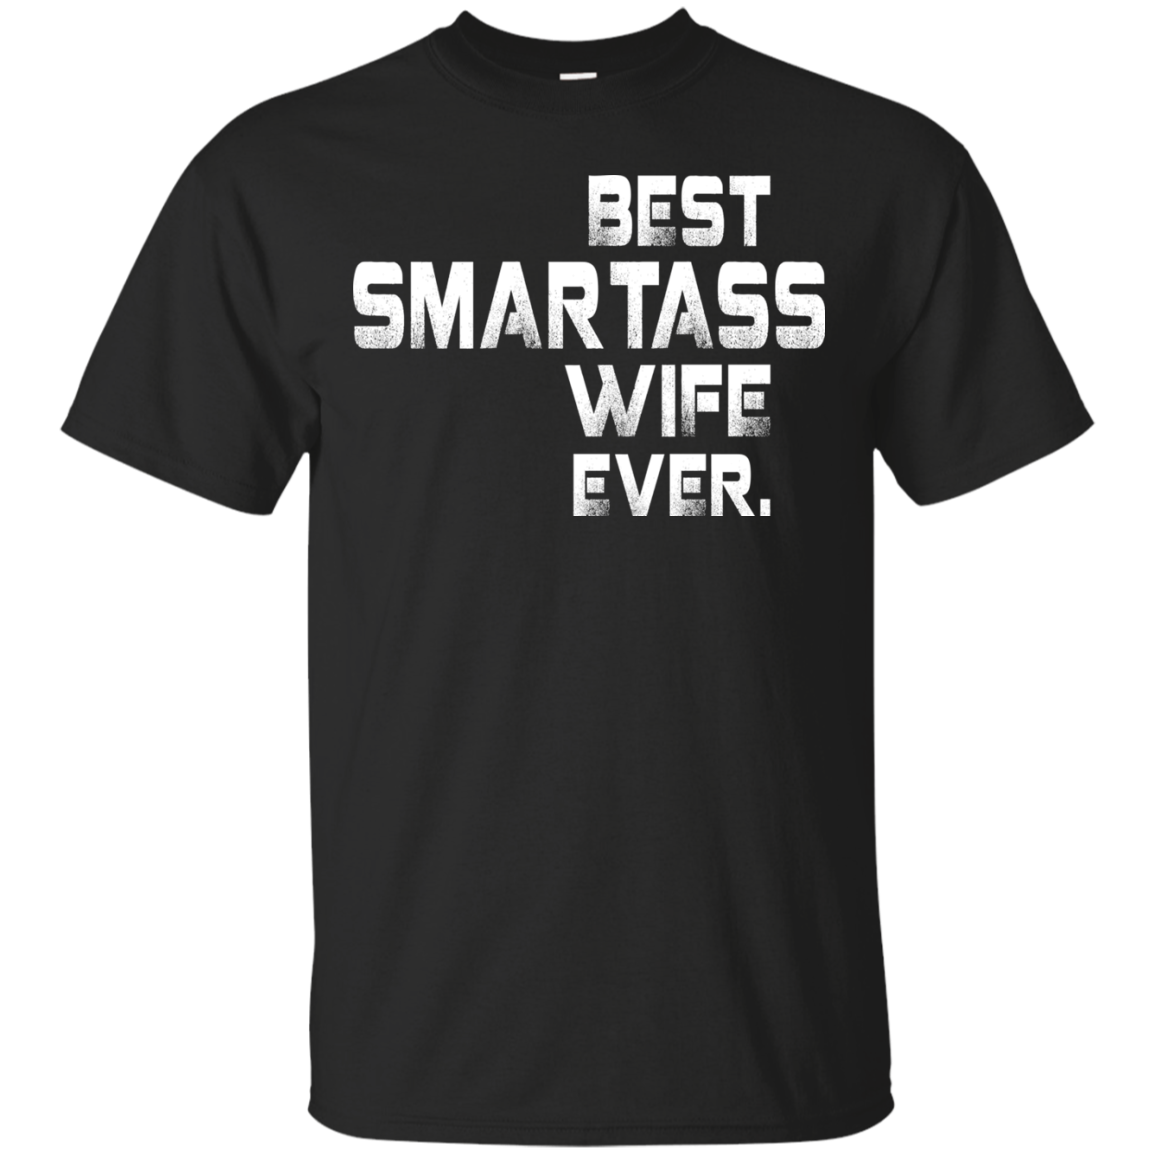 Best smartass wife ever shirt, tank, sweater